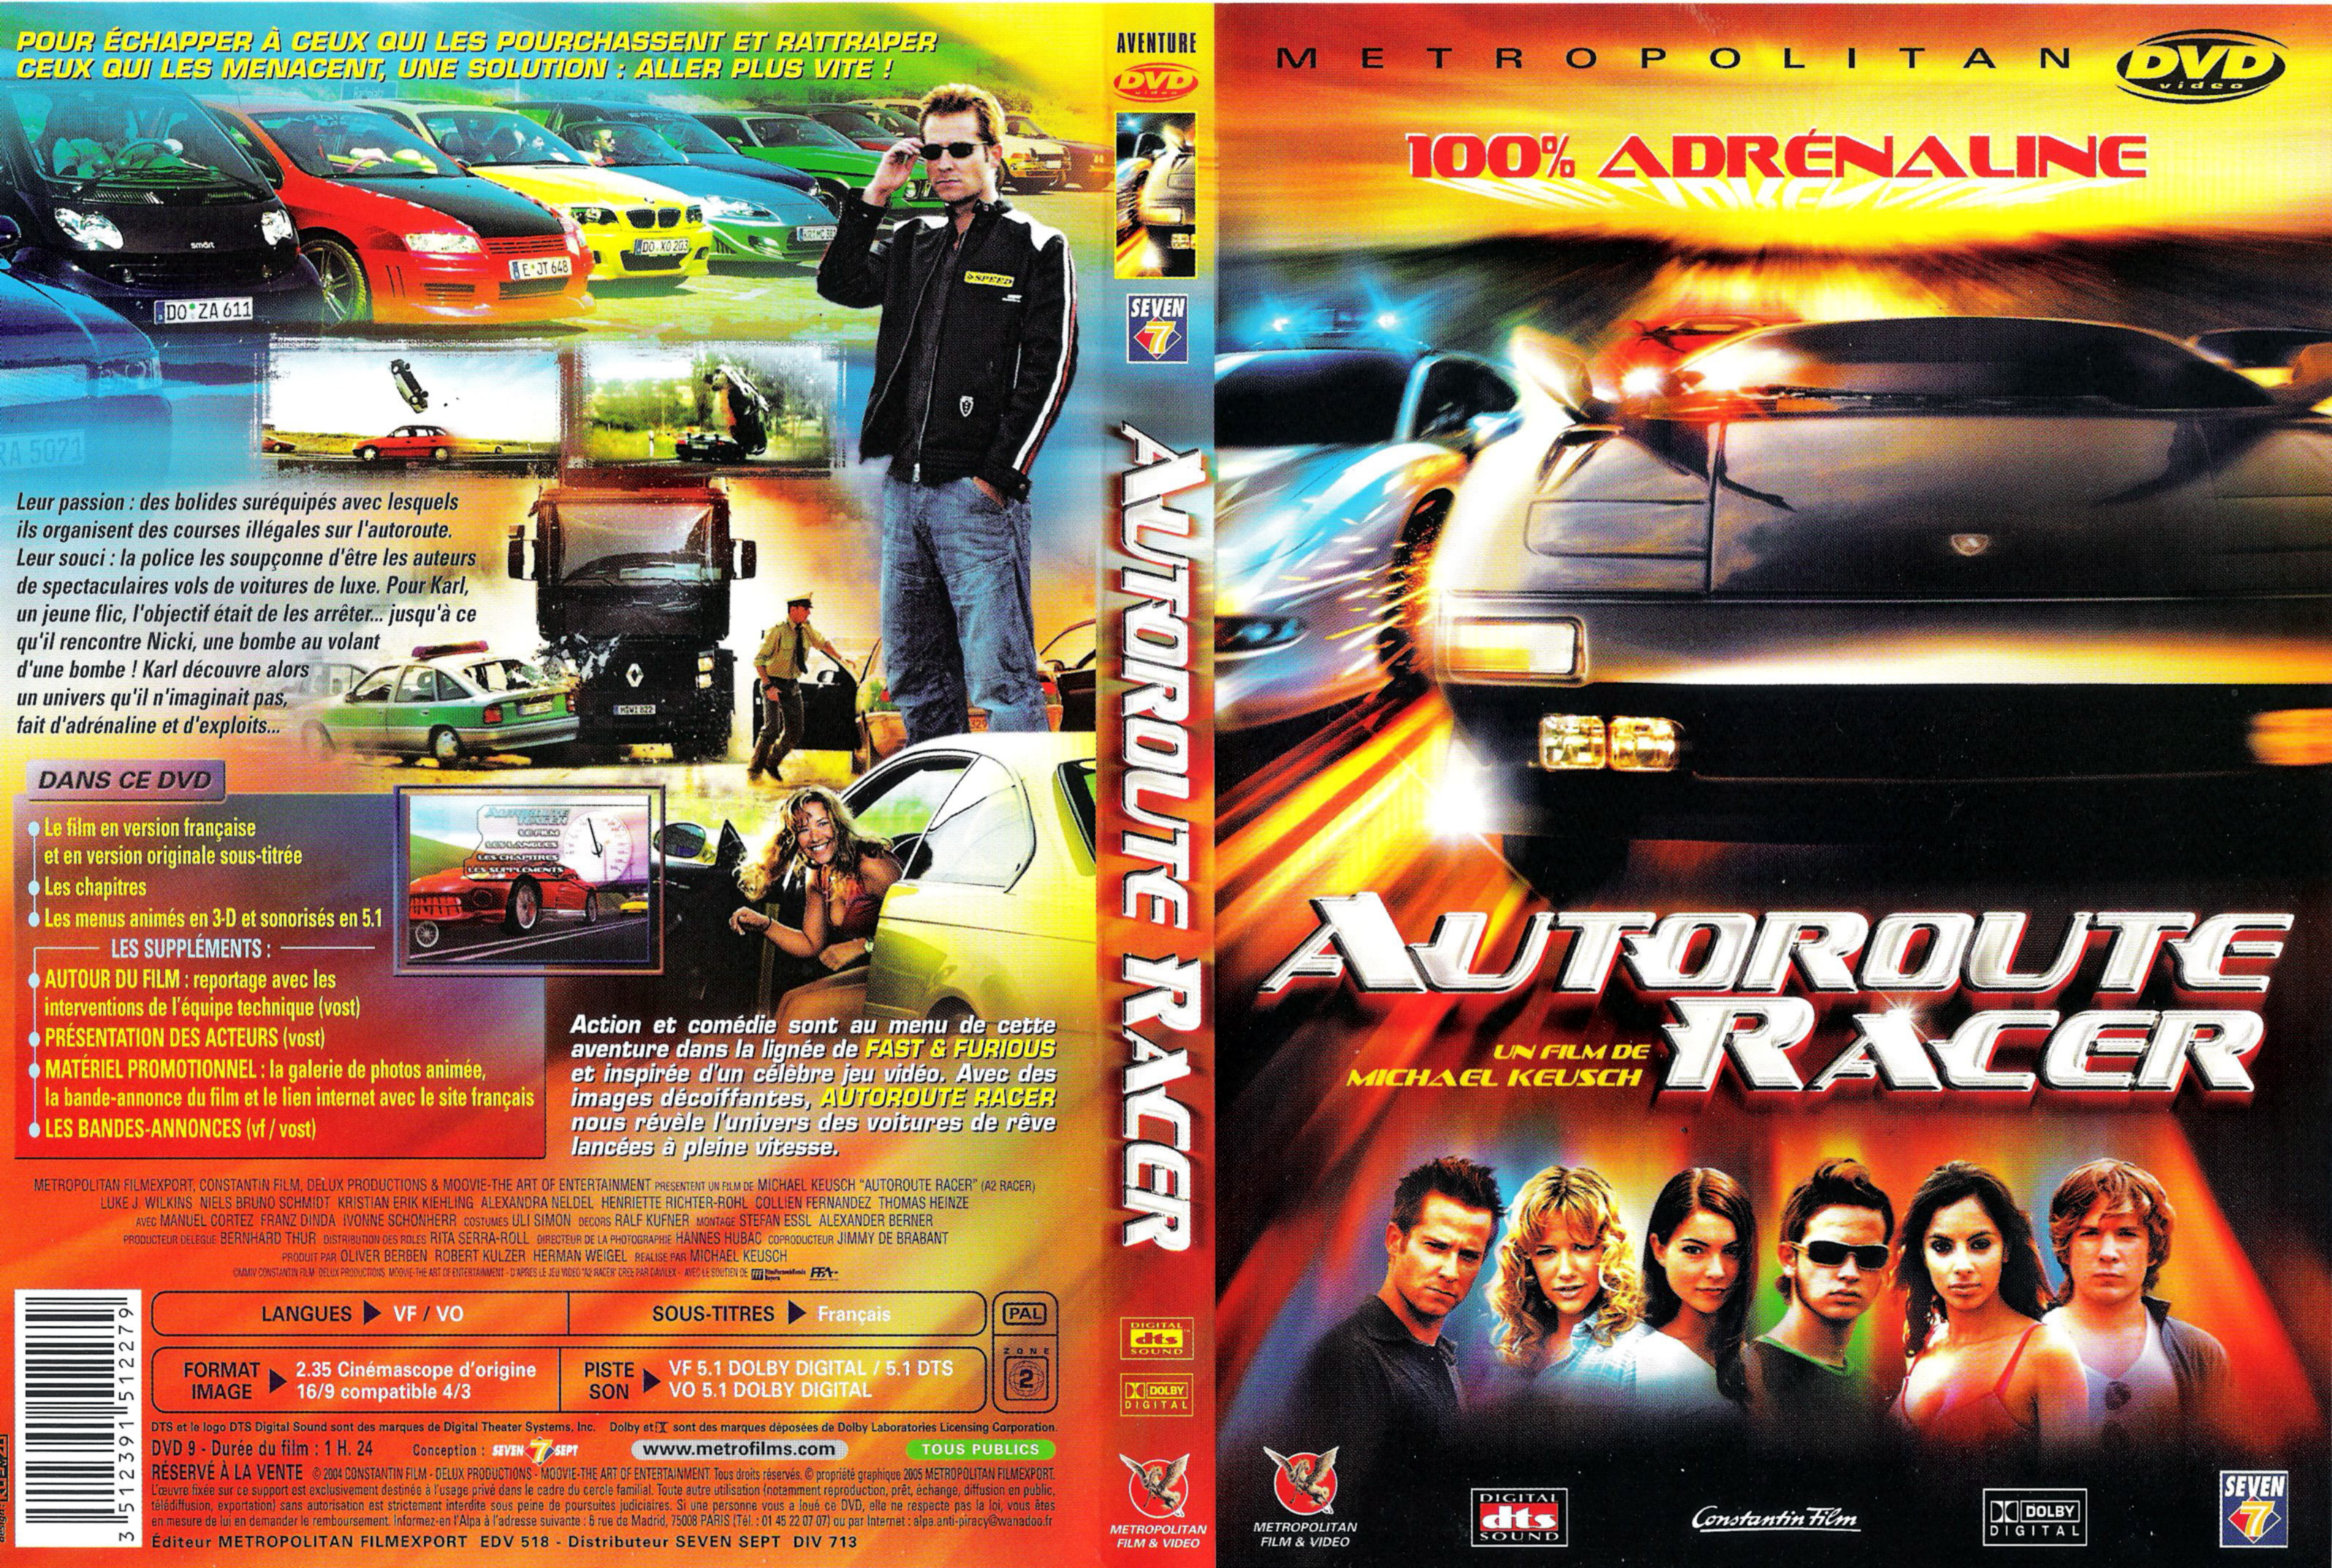 Jaquette DVD Autoroute racer v2